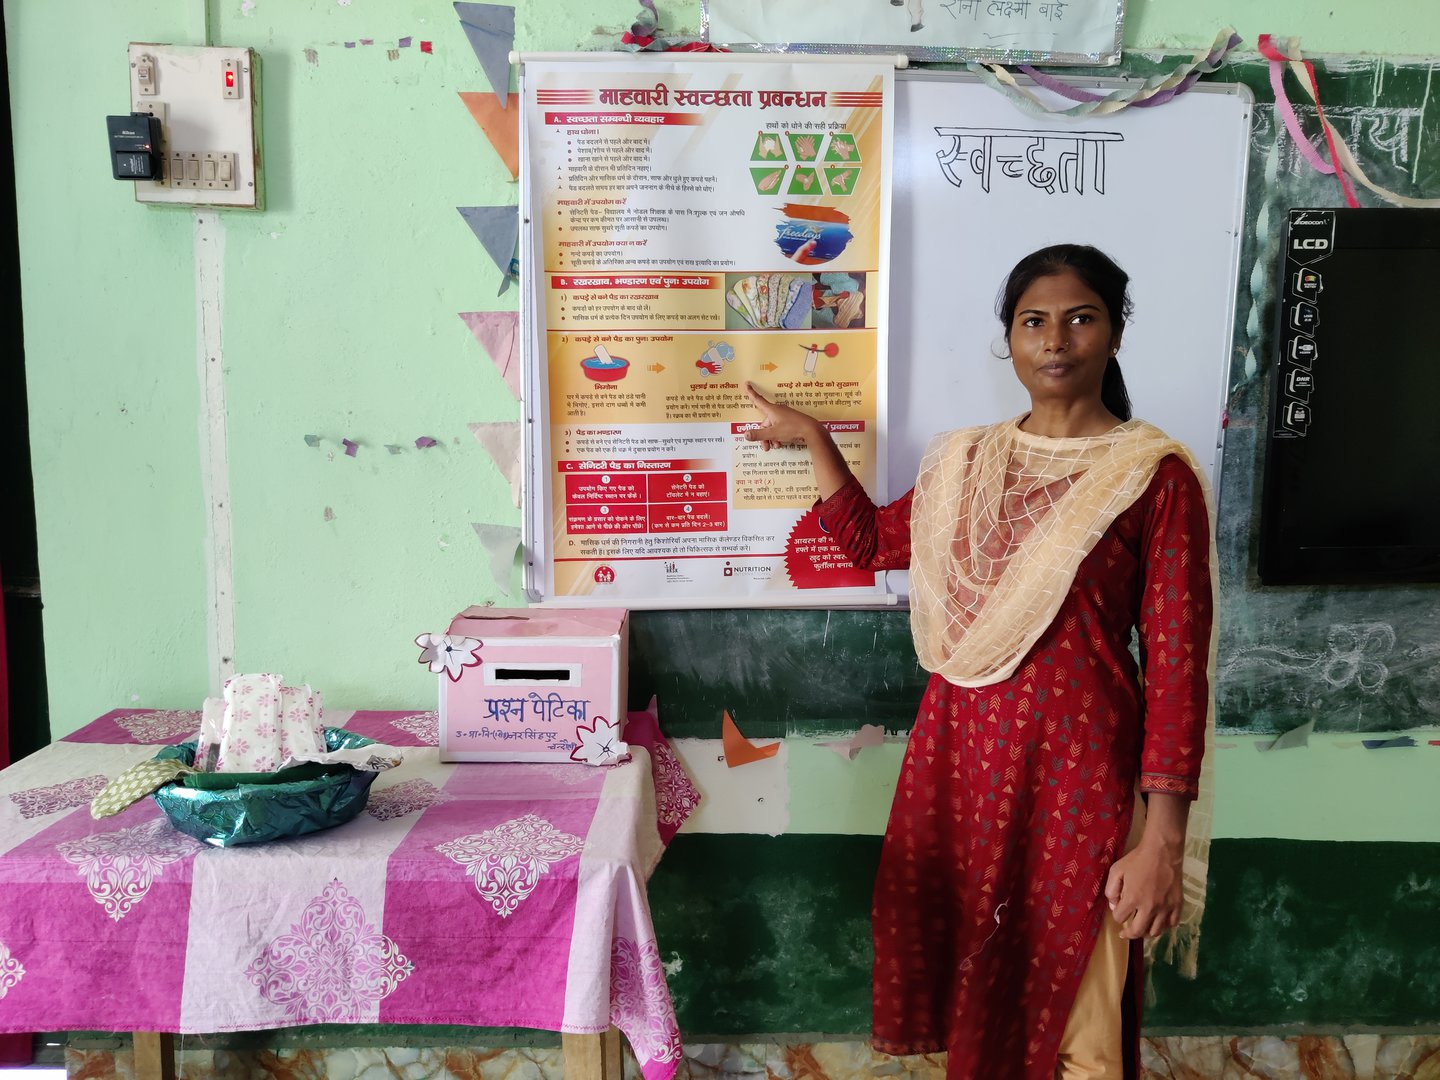 Une enseignante en kurta rouge se tient devant une affiche dans une salle de classe. Elle montre l'affiche tout en regardant la caméra.